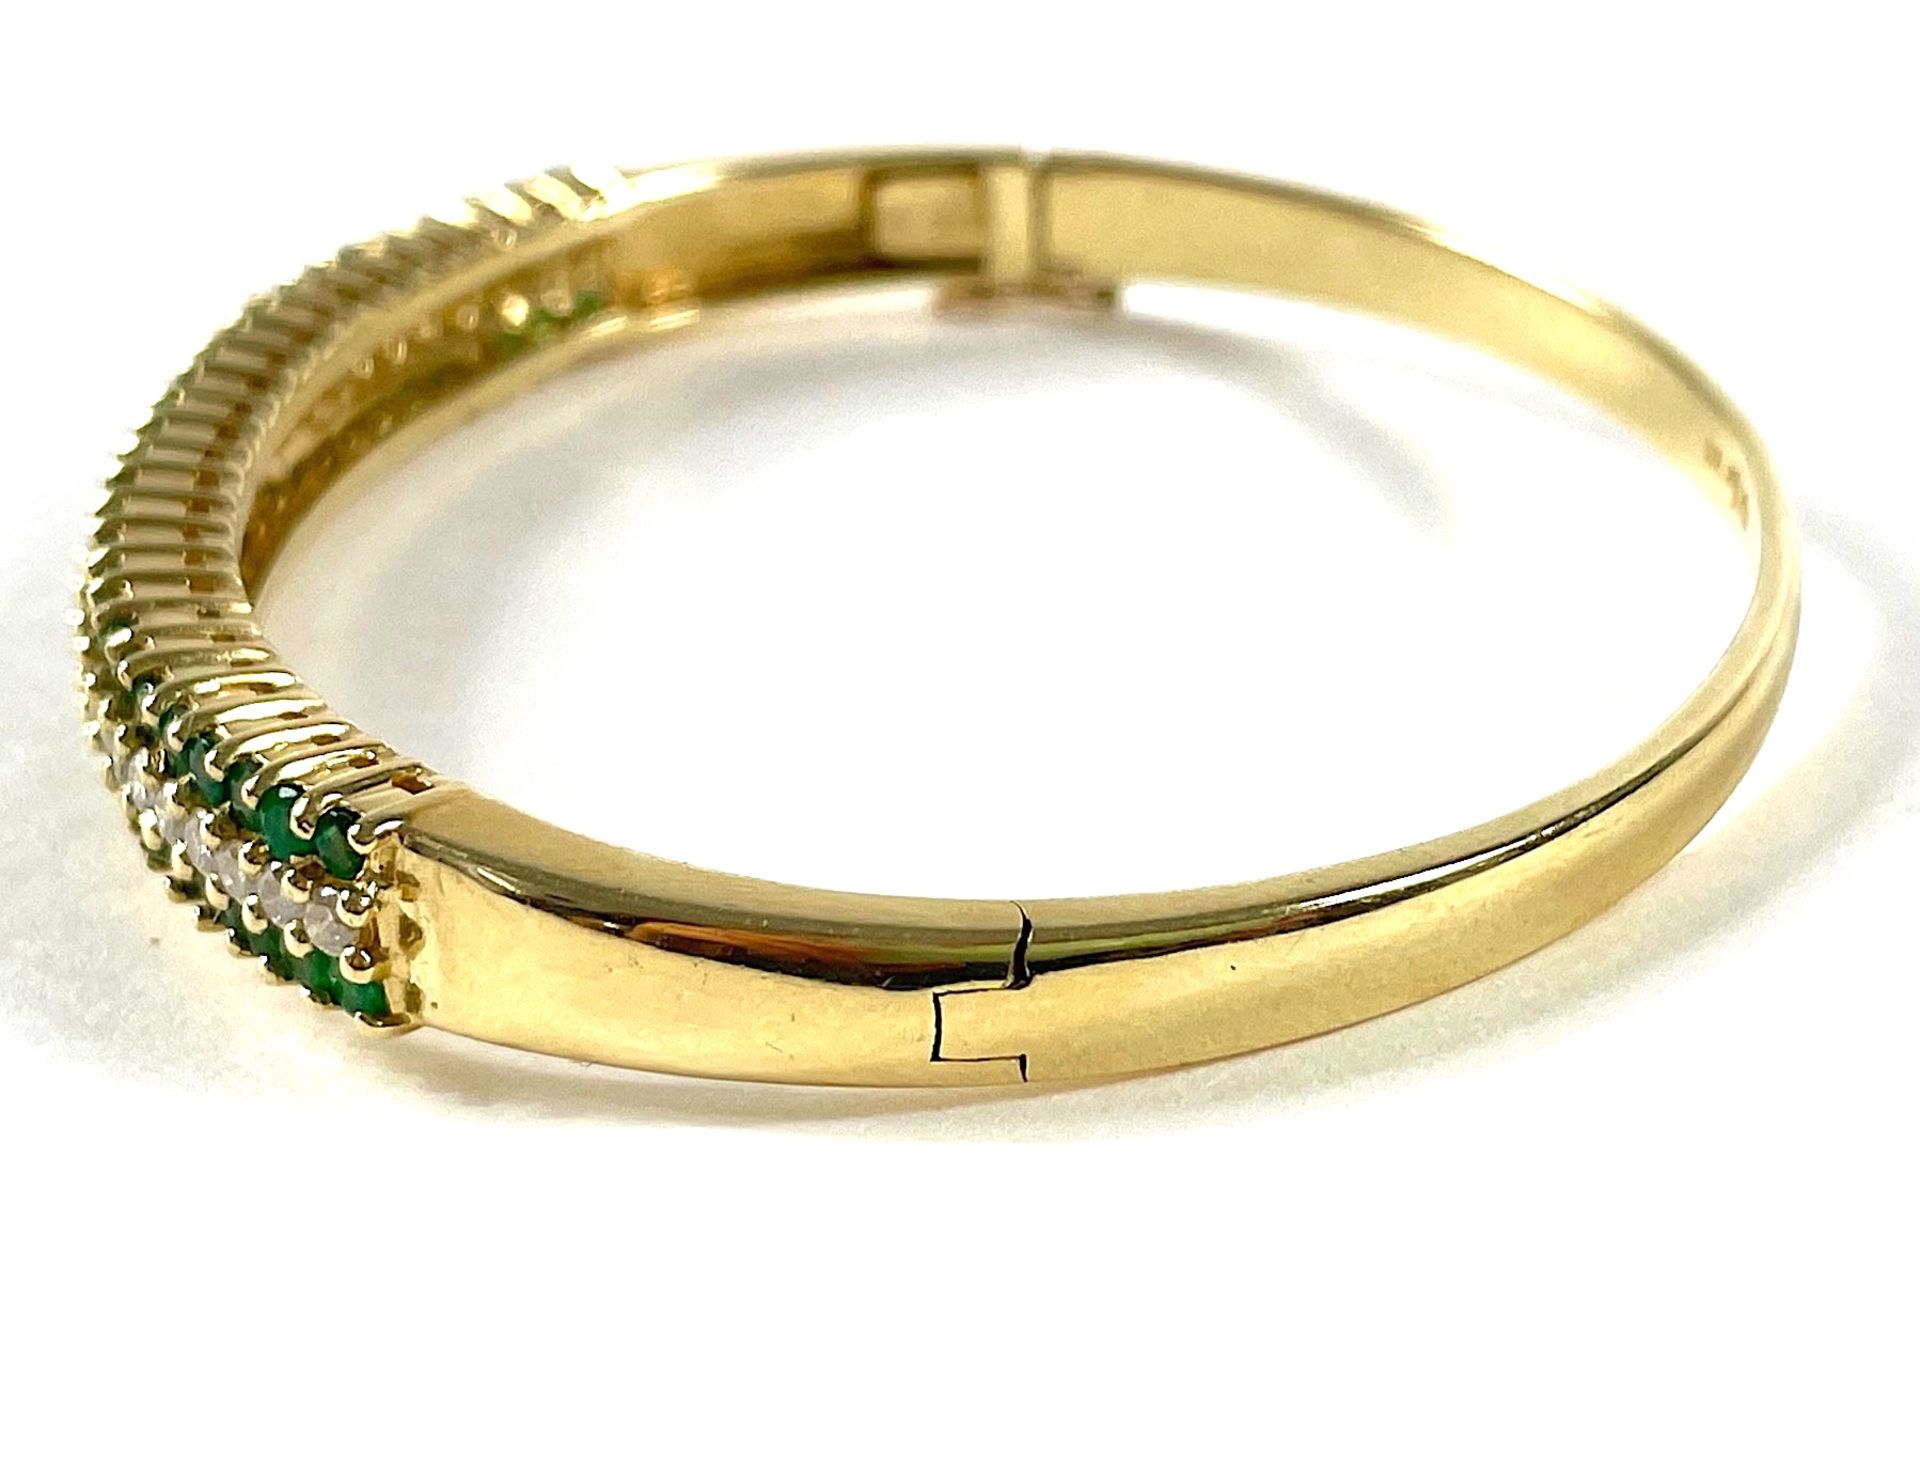 Emerald and diamond bangle  - Image 2 of 5